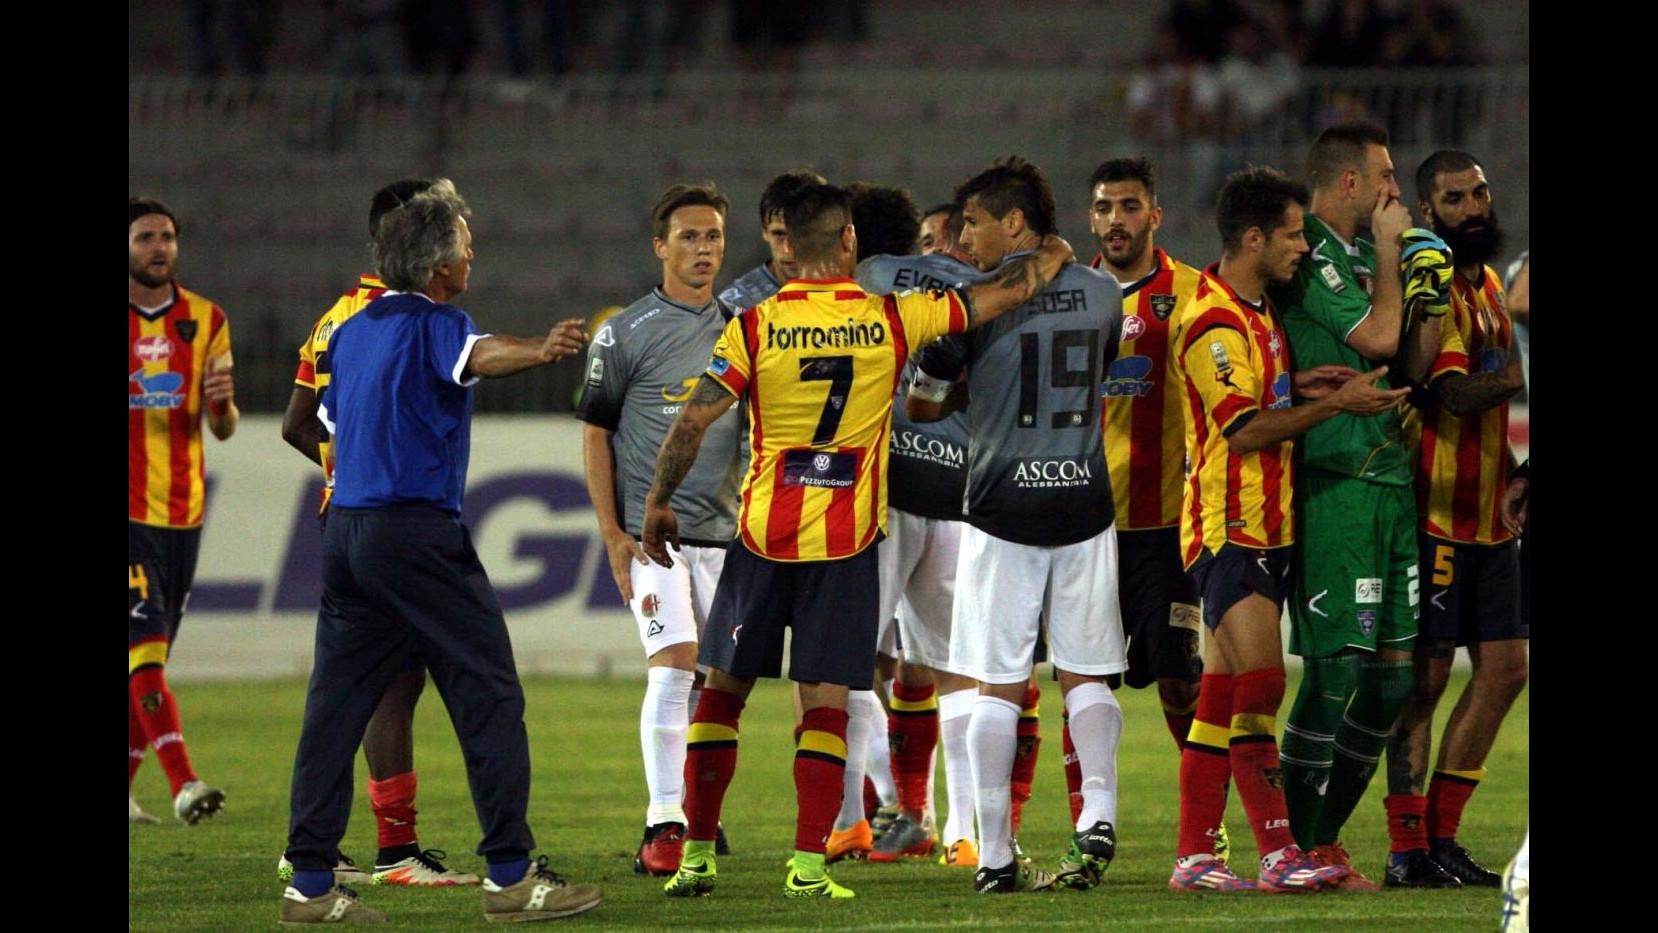 FOTO Playoff di Lega Pro, Lecce-Alessandria 1-1